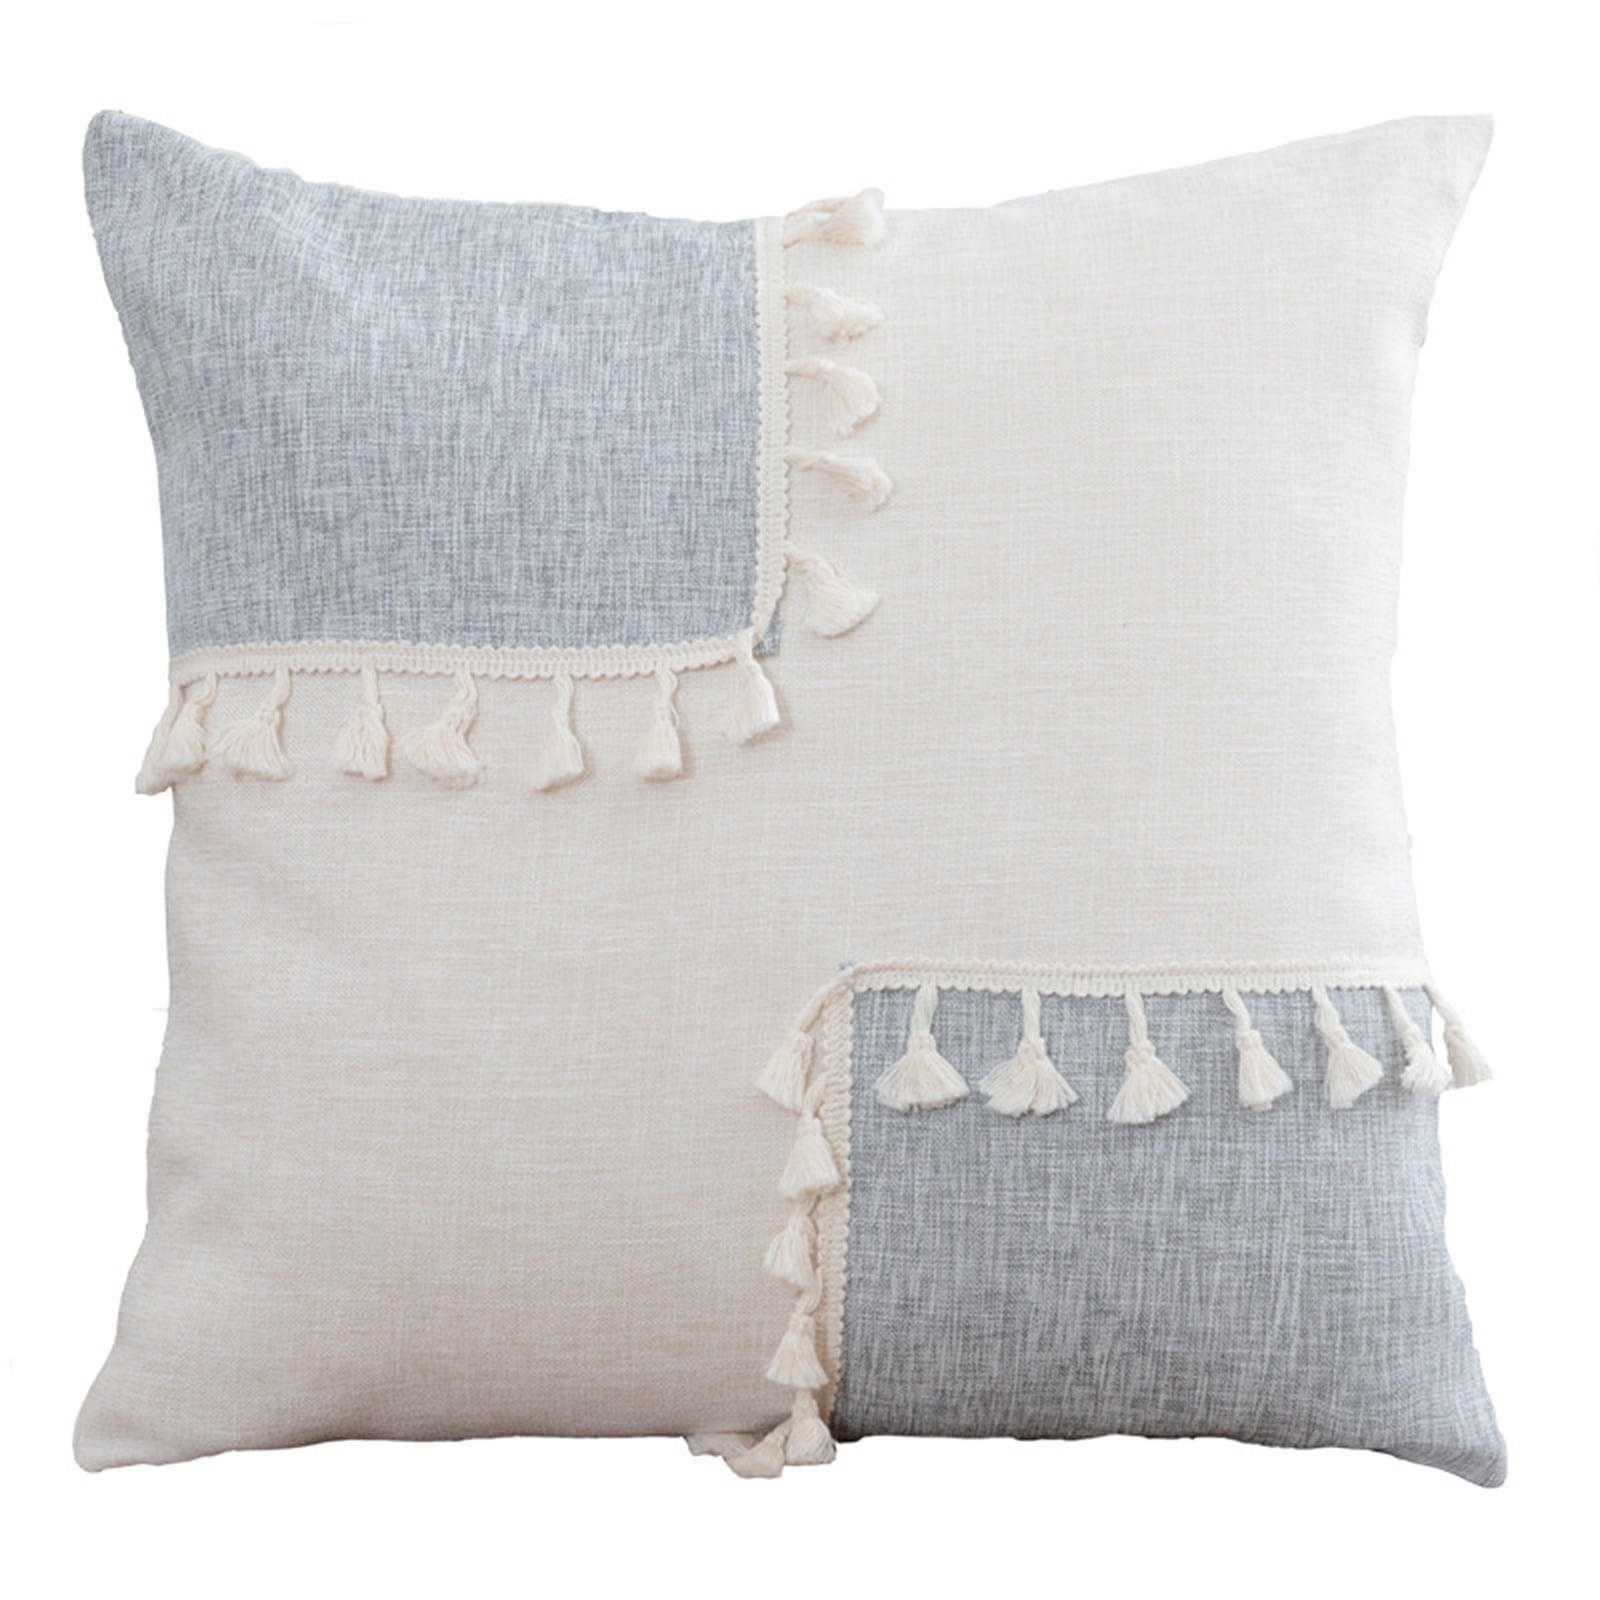 Cotton Linen Fashion Home Decor Throw Pillow Case Fox Sofa Waist Cushion Cover 